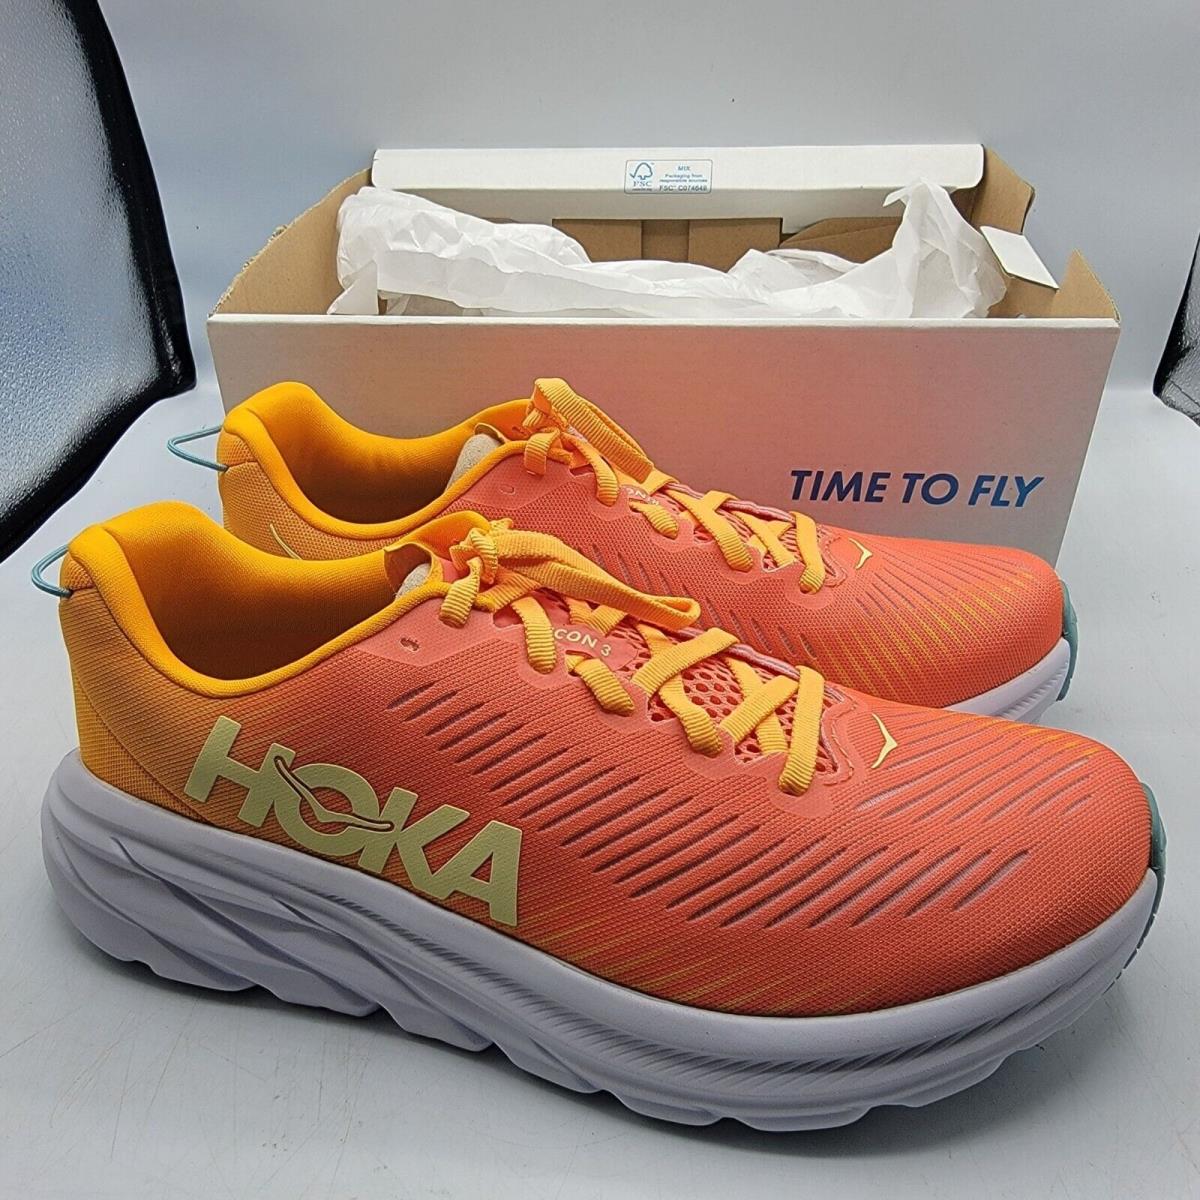 Hoka One One Rincon 3 Womens Size 7.5 Orange Running Shoes 1119396 Cryw